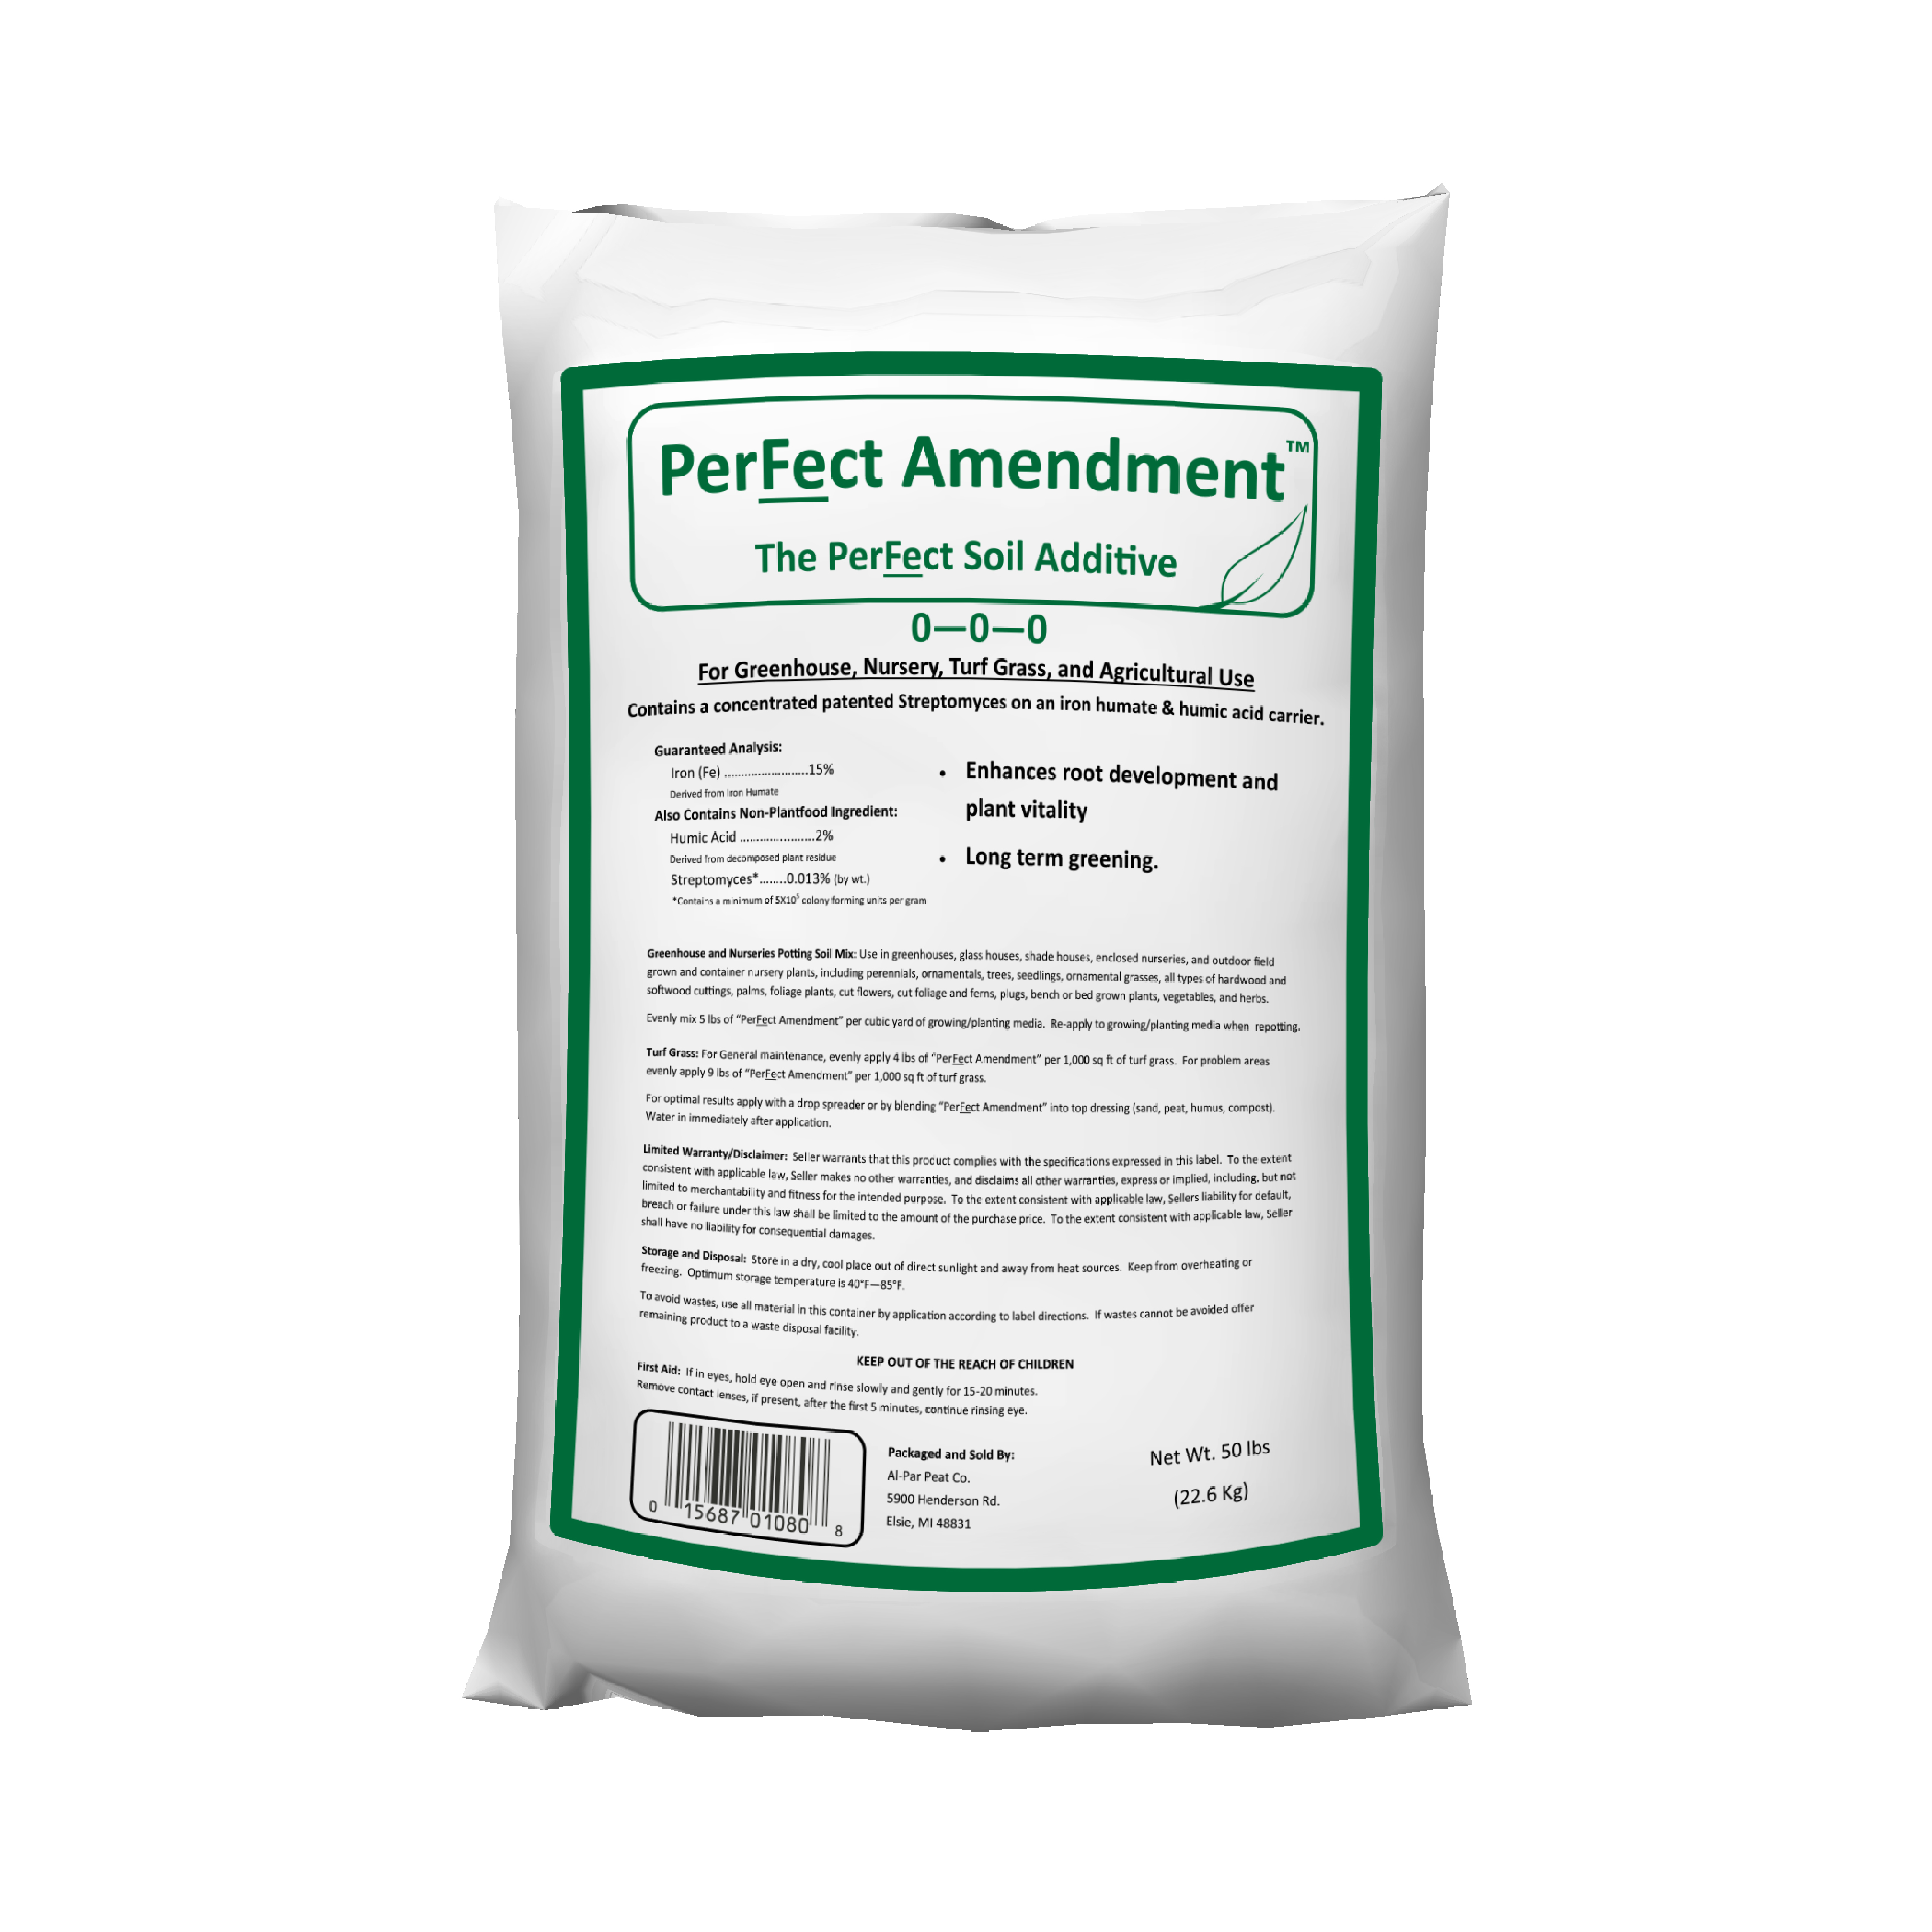 PerFect Amendment Soil Additive 50 lb Bag